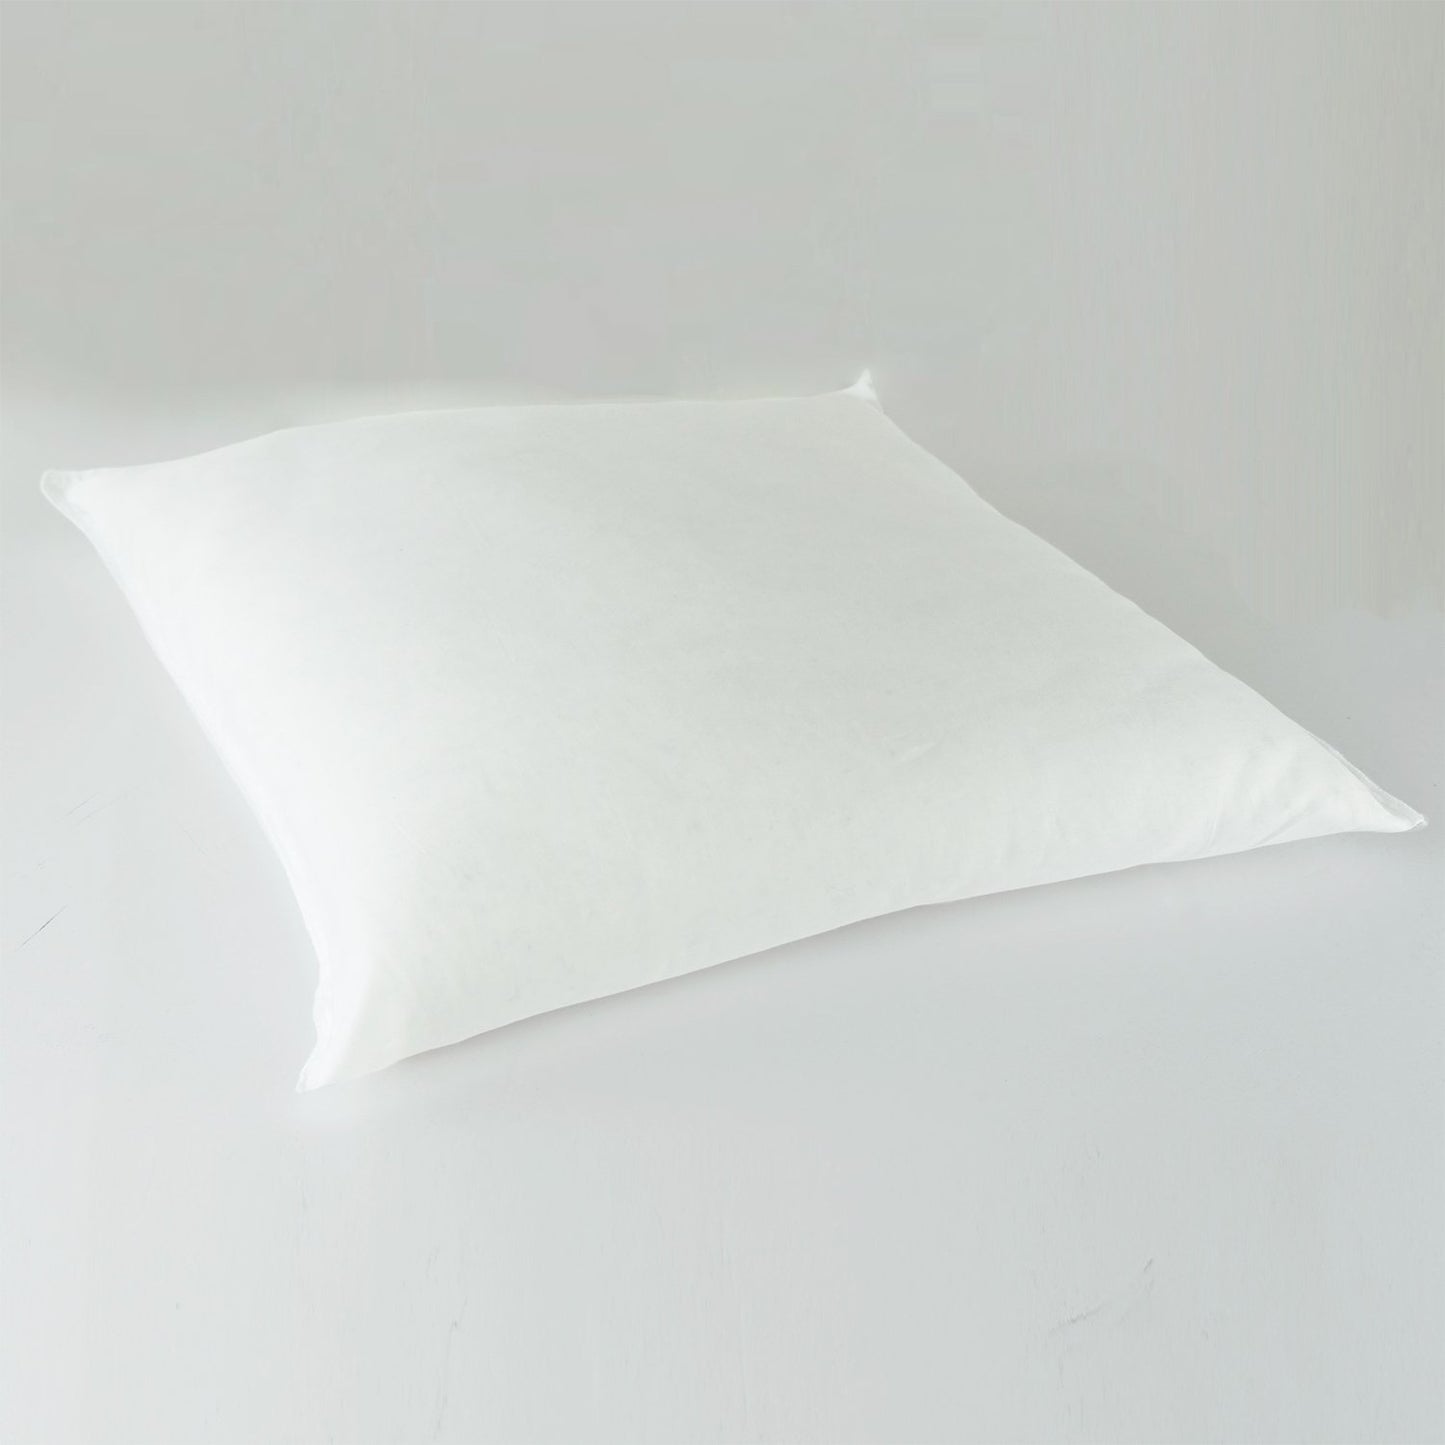 J-Life Usagi Pink Zabuton Floor Pillow_Pillows & Shams_Zabuton Floor Pillows_100% Cotton_Reversible